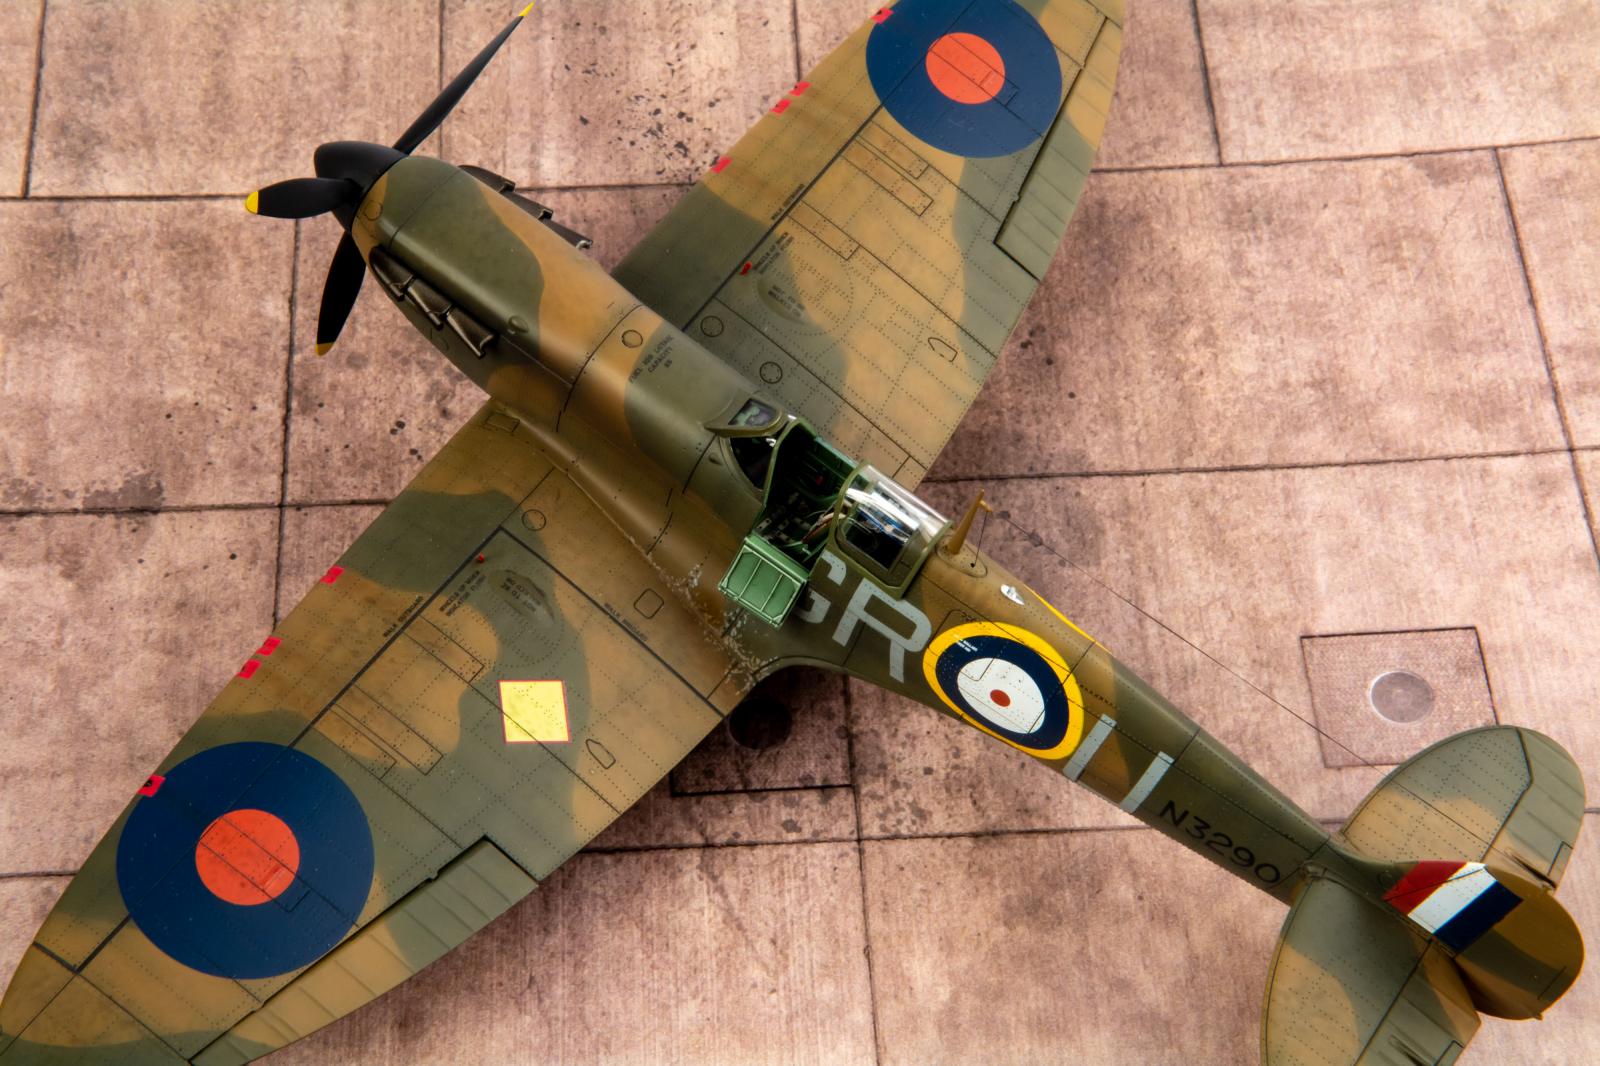 Eduard Edua648579 Spitfire Mk.i Wheels 1/48 for sale online